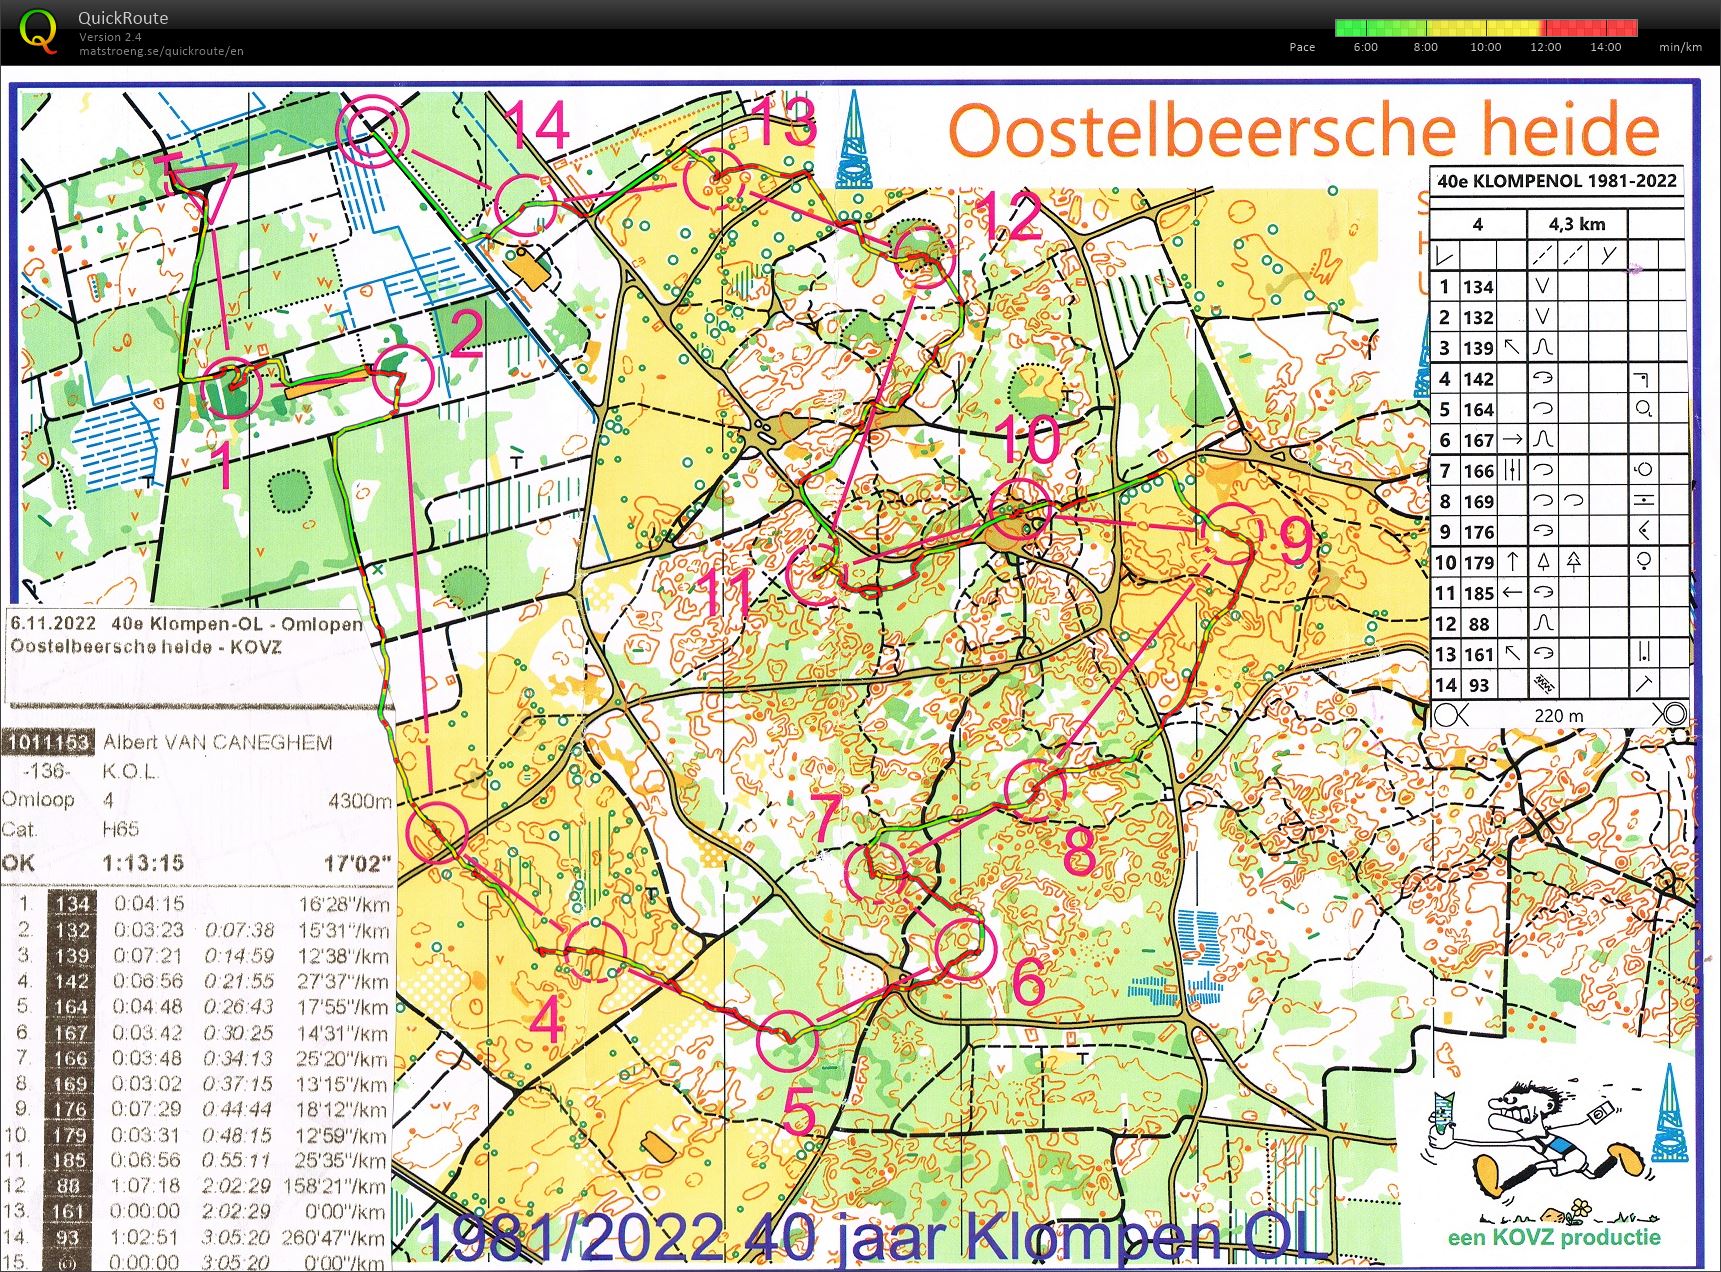 Oosterbeersche heide (06-11-2022)